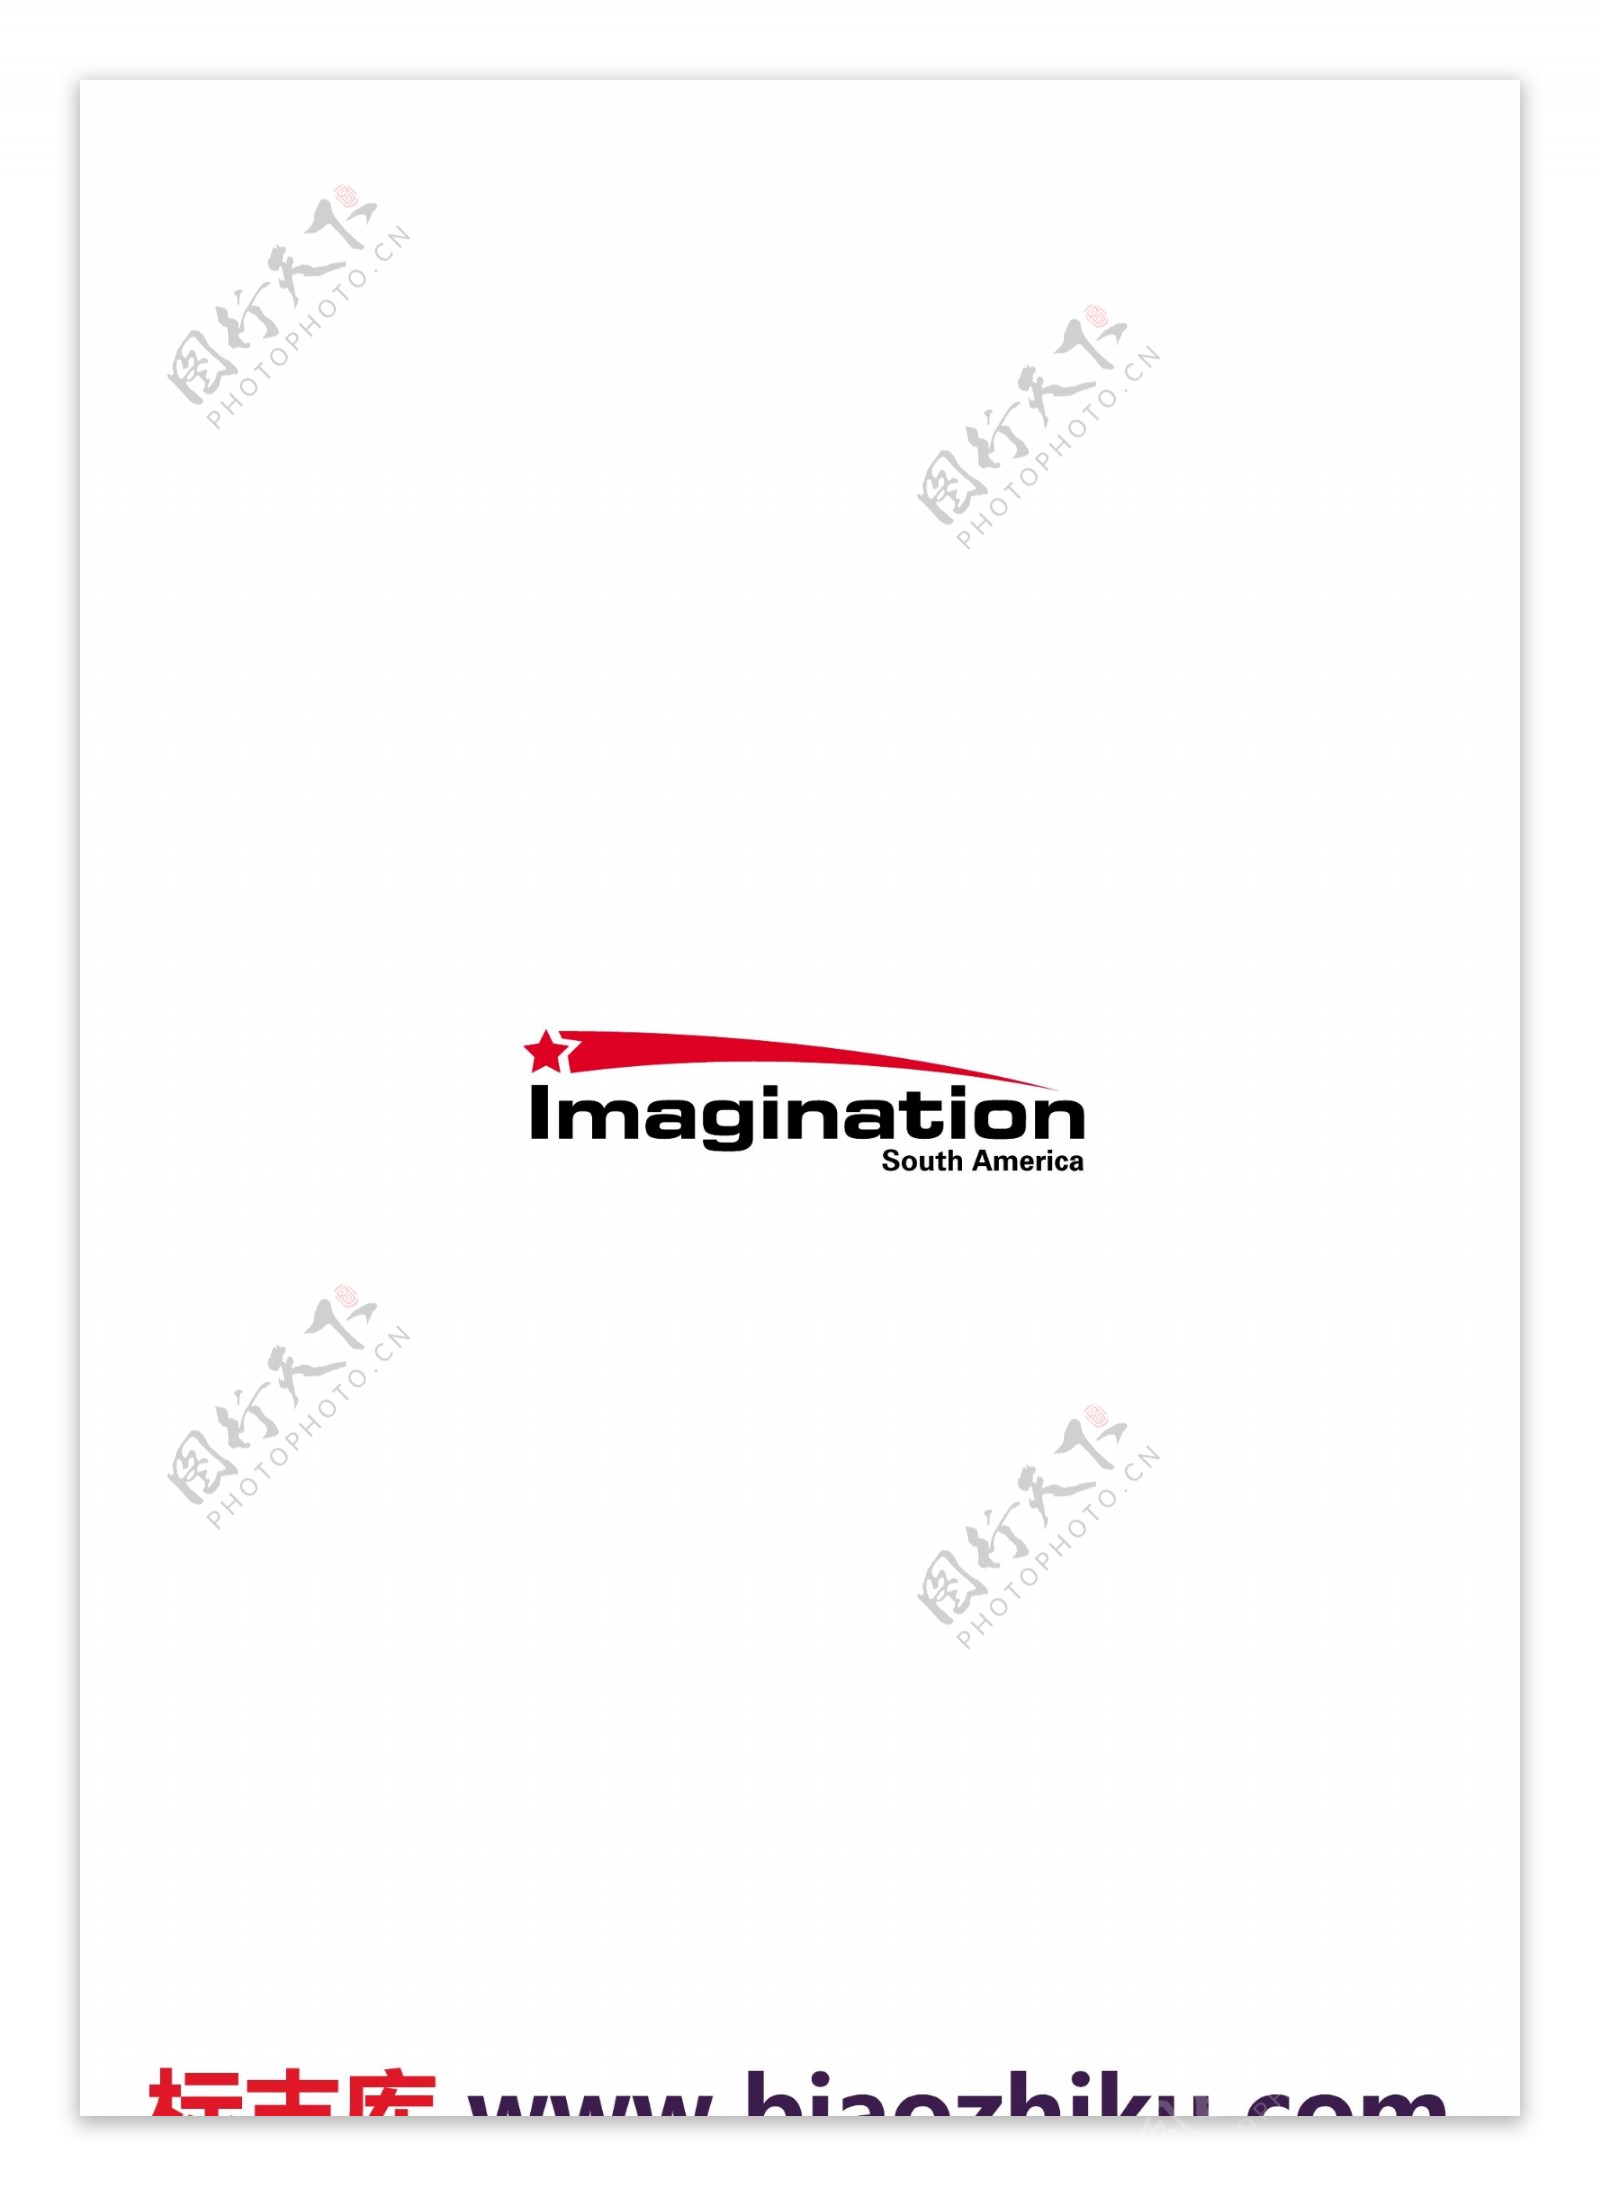 imaginationsouthamericalogo设计欣赏imaginationsouthamerica设计公司LOGO下载标志设计欣赏